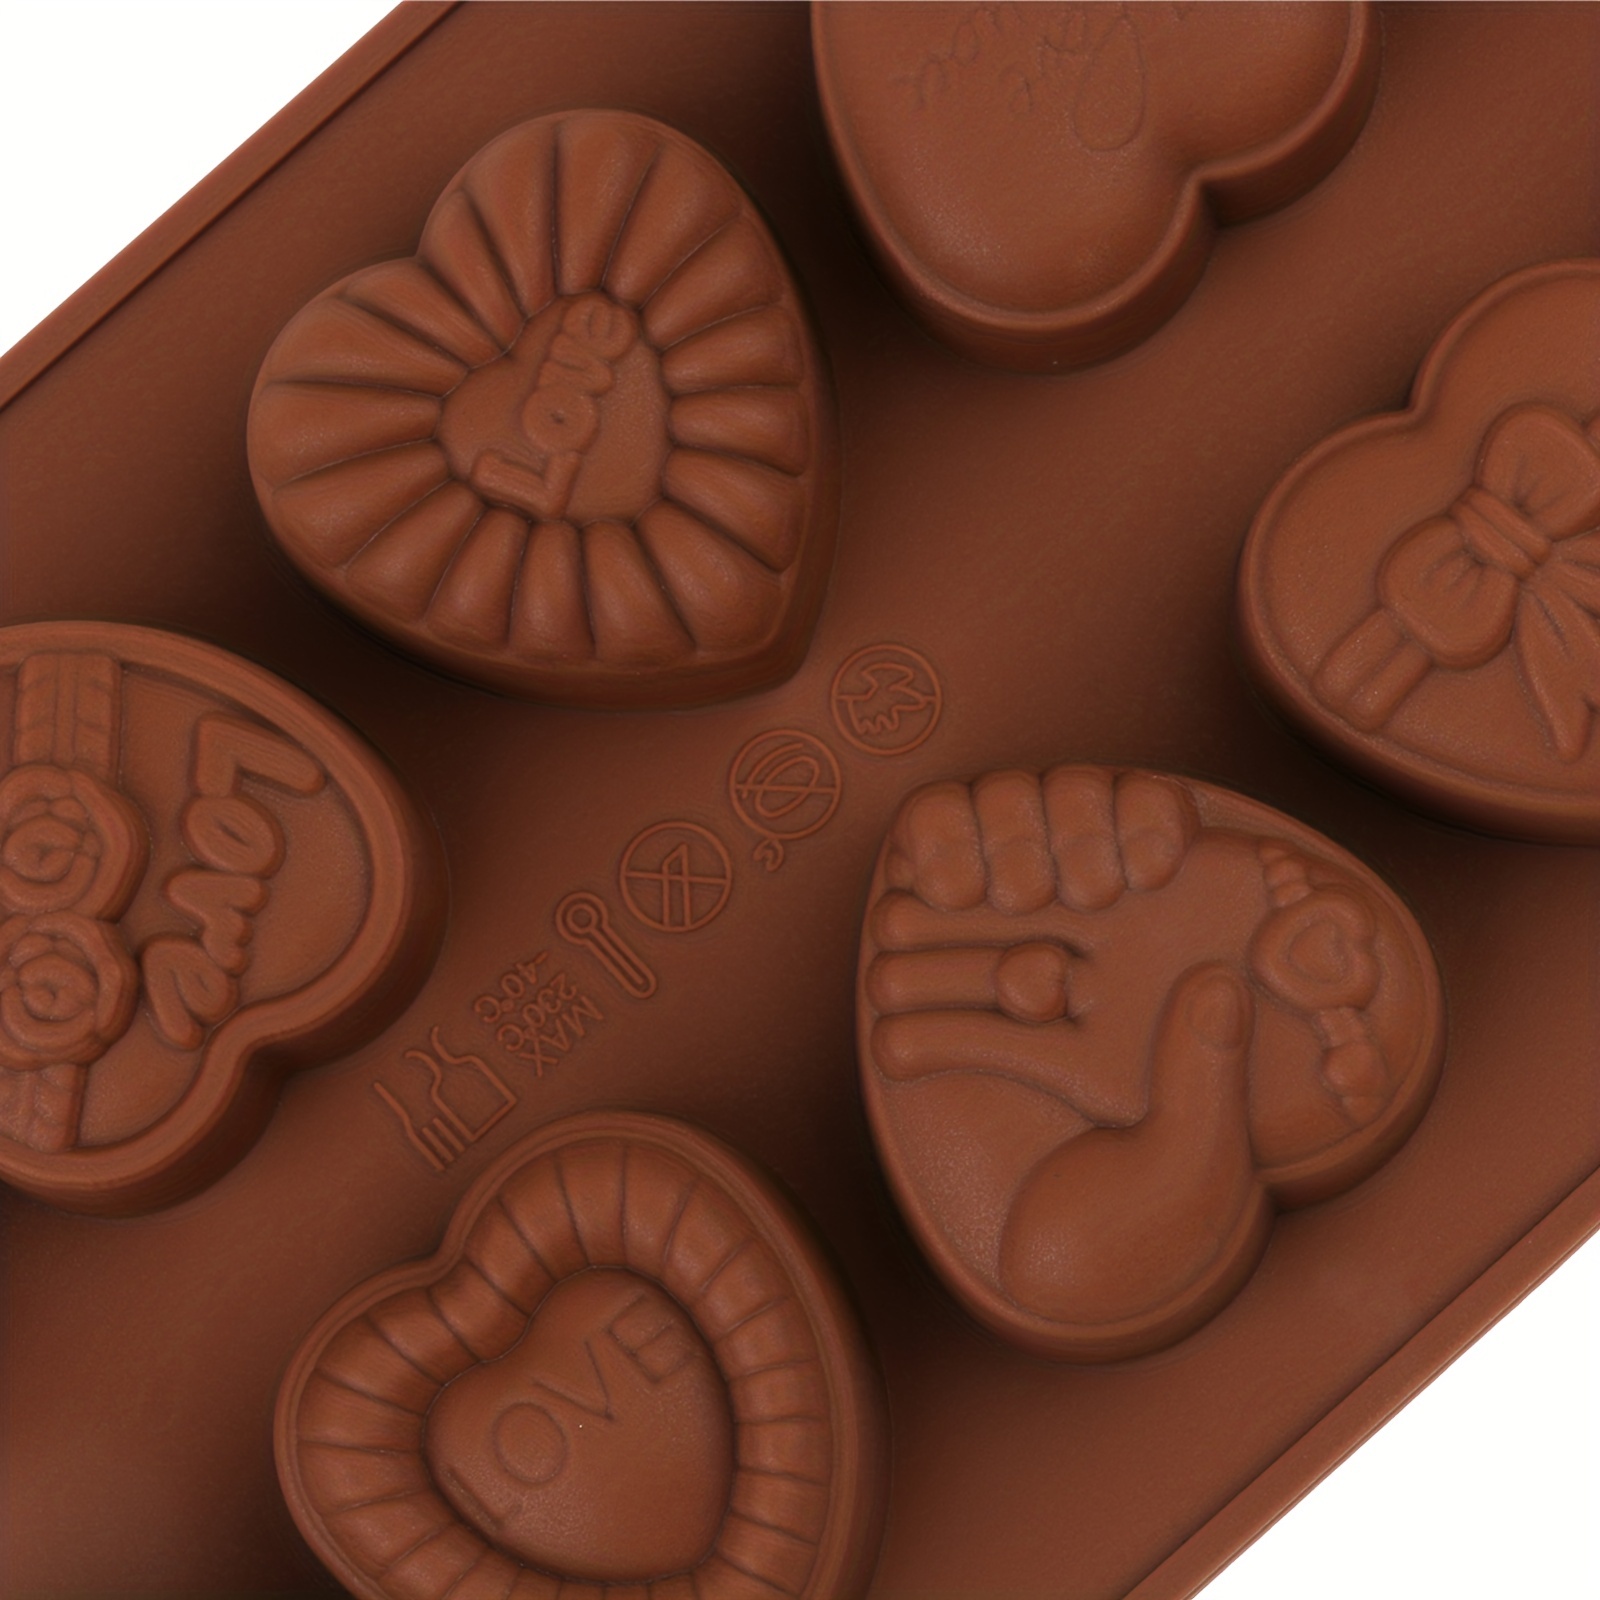 Molde Corazon flechado - Tienda del Chocolate